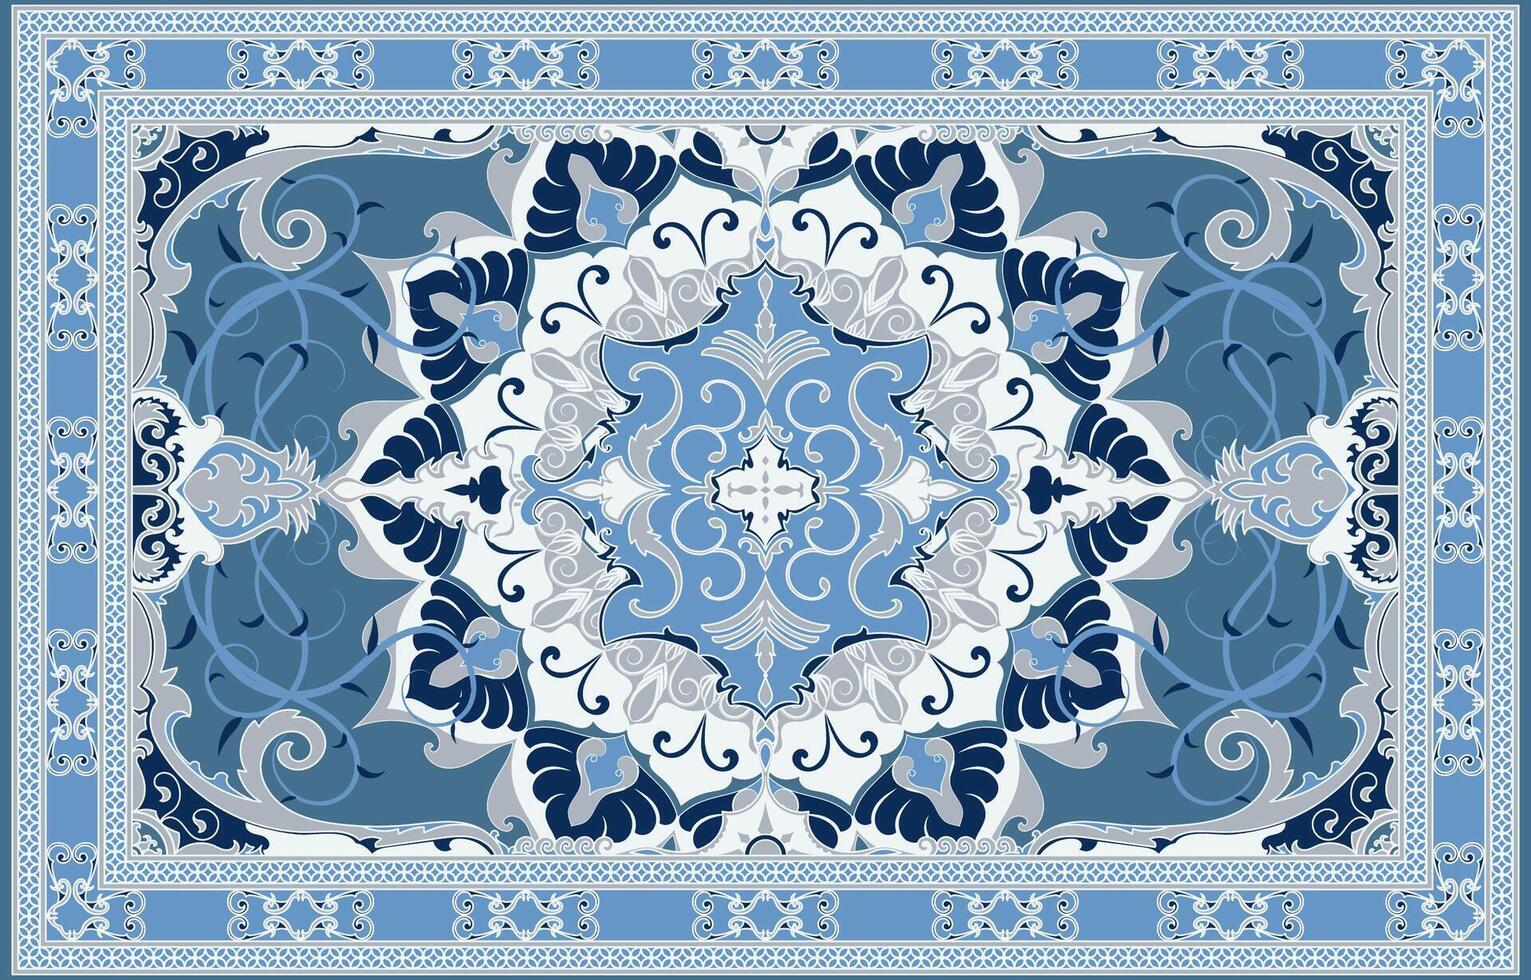 Perzisch tapijt decoratief elementen Arabisch decoratief tapijten mooi ontwerpen voor tapijten, tapis, yoga matten. vector